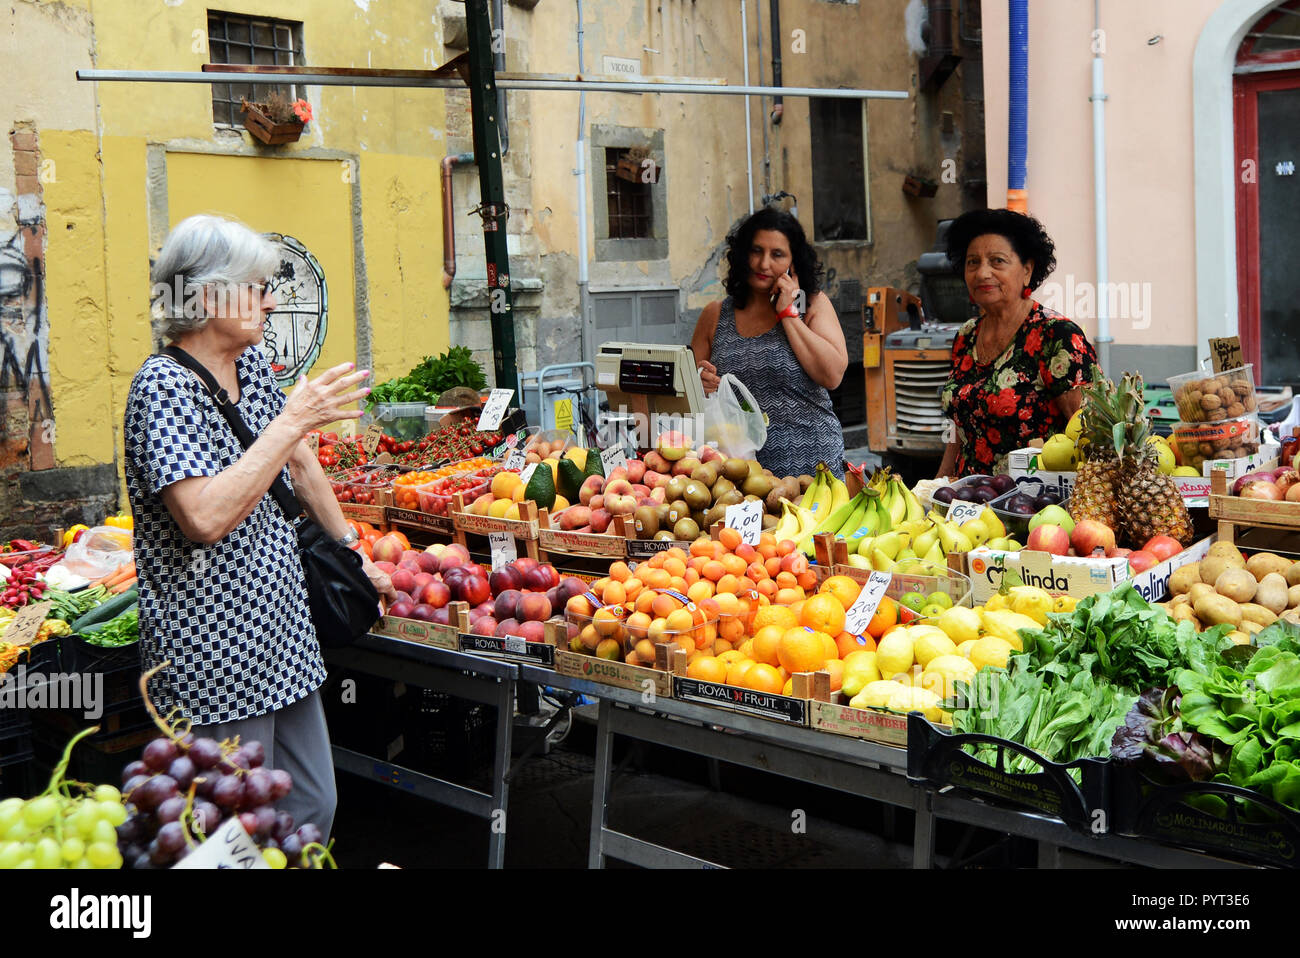 Un petit marché dans le centre de Pise, Italie. Banque D'Images